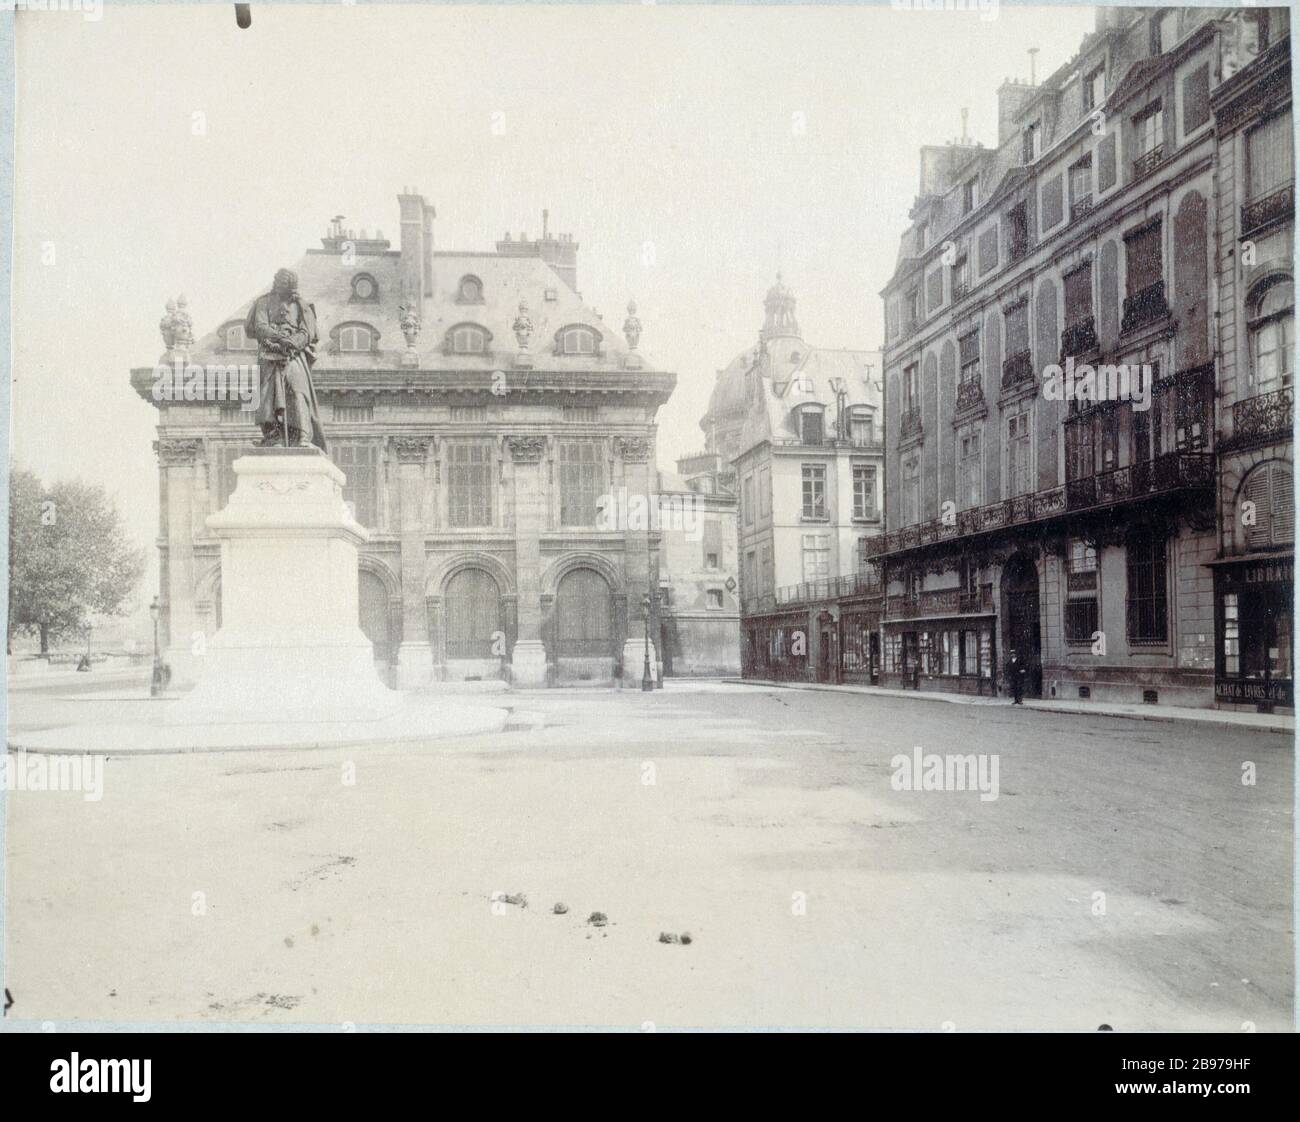 WHARF MALAQUAIS Le quai Malaquais. Paris (VIème arrondissement), 1902. Photographie d'Eugène Atget (1857-1927). Paris, musée Carnavalet. Stock Photo